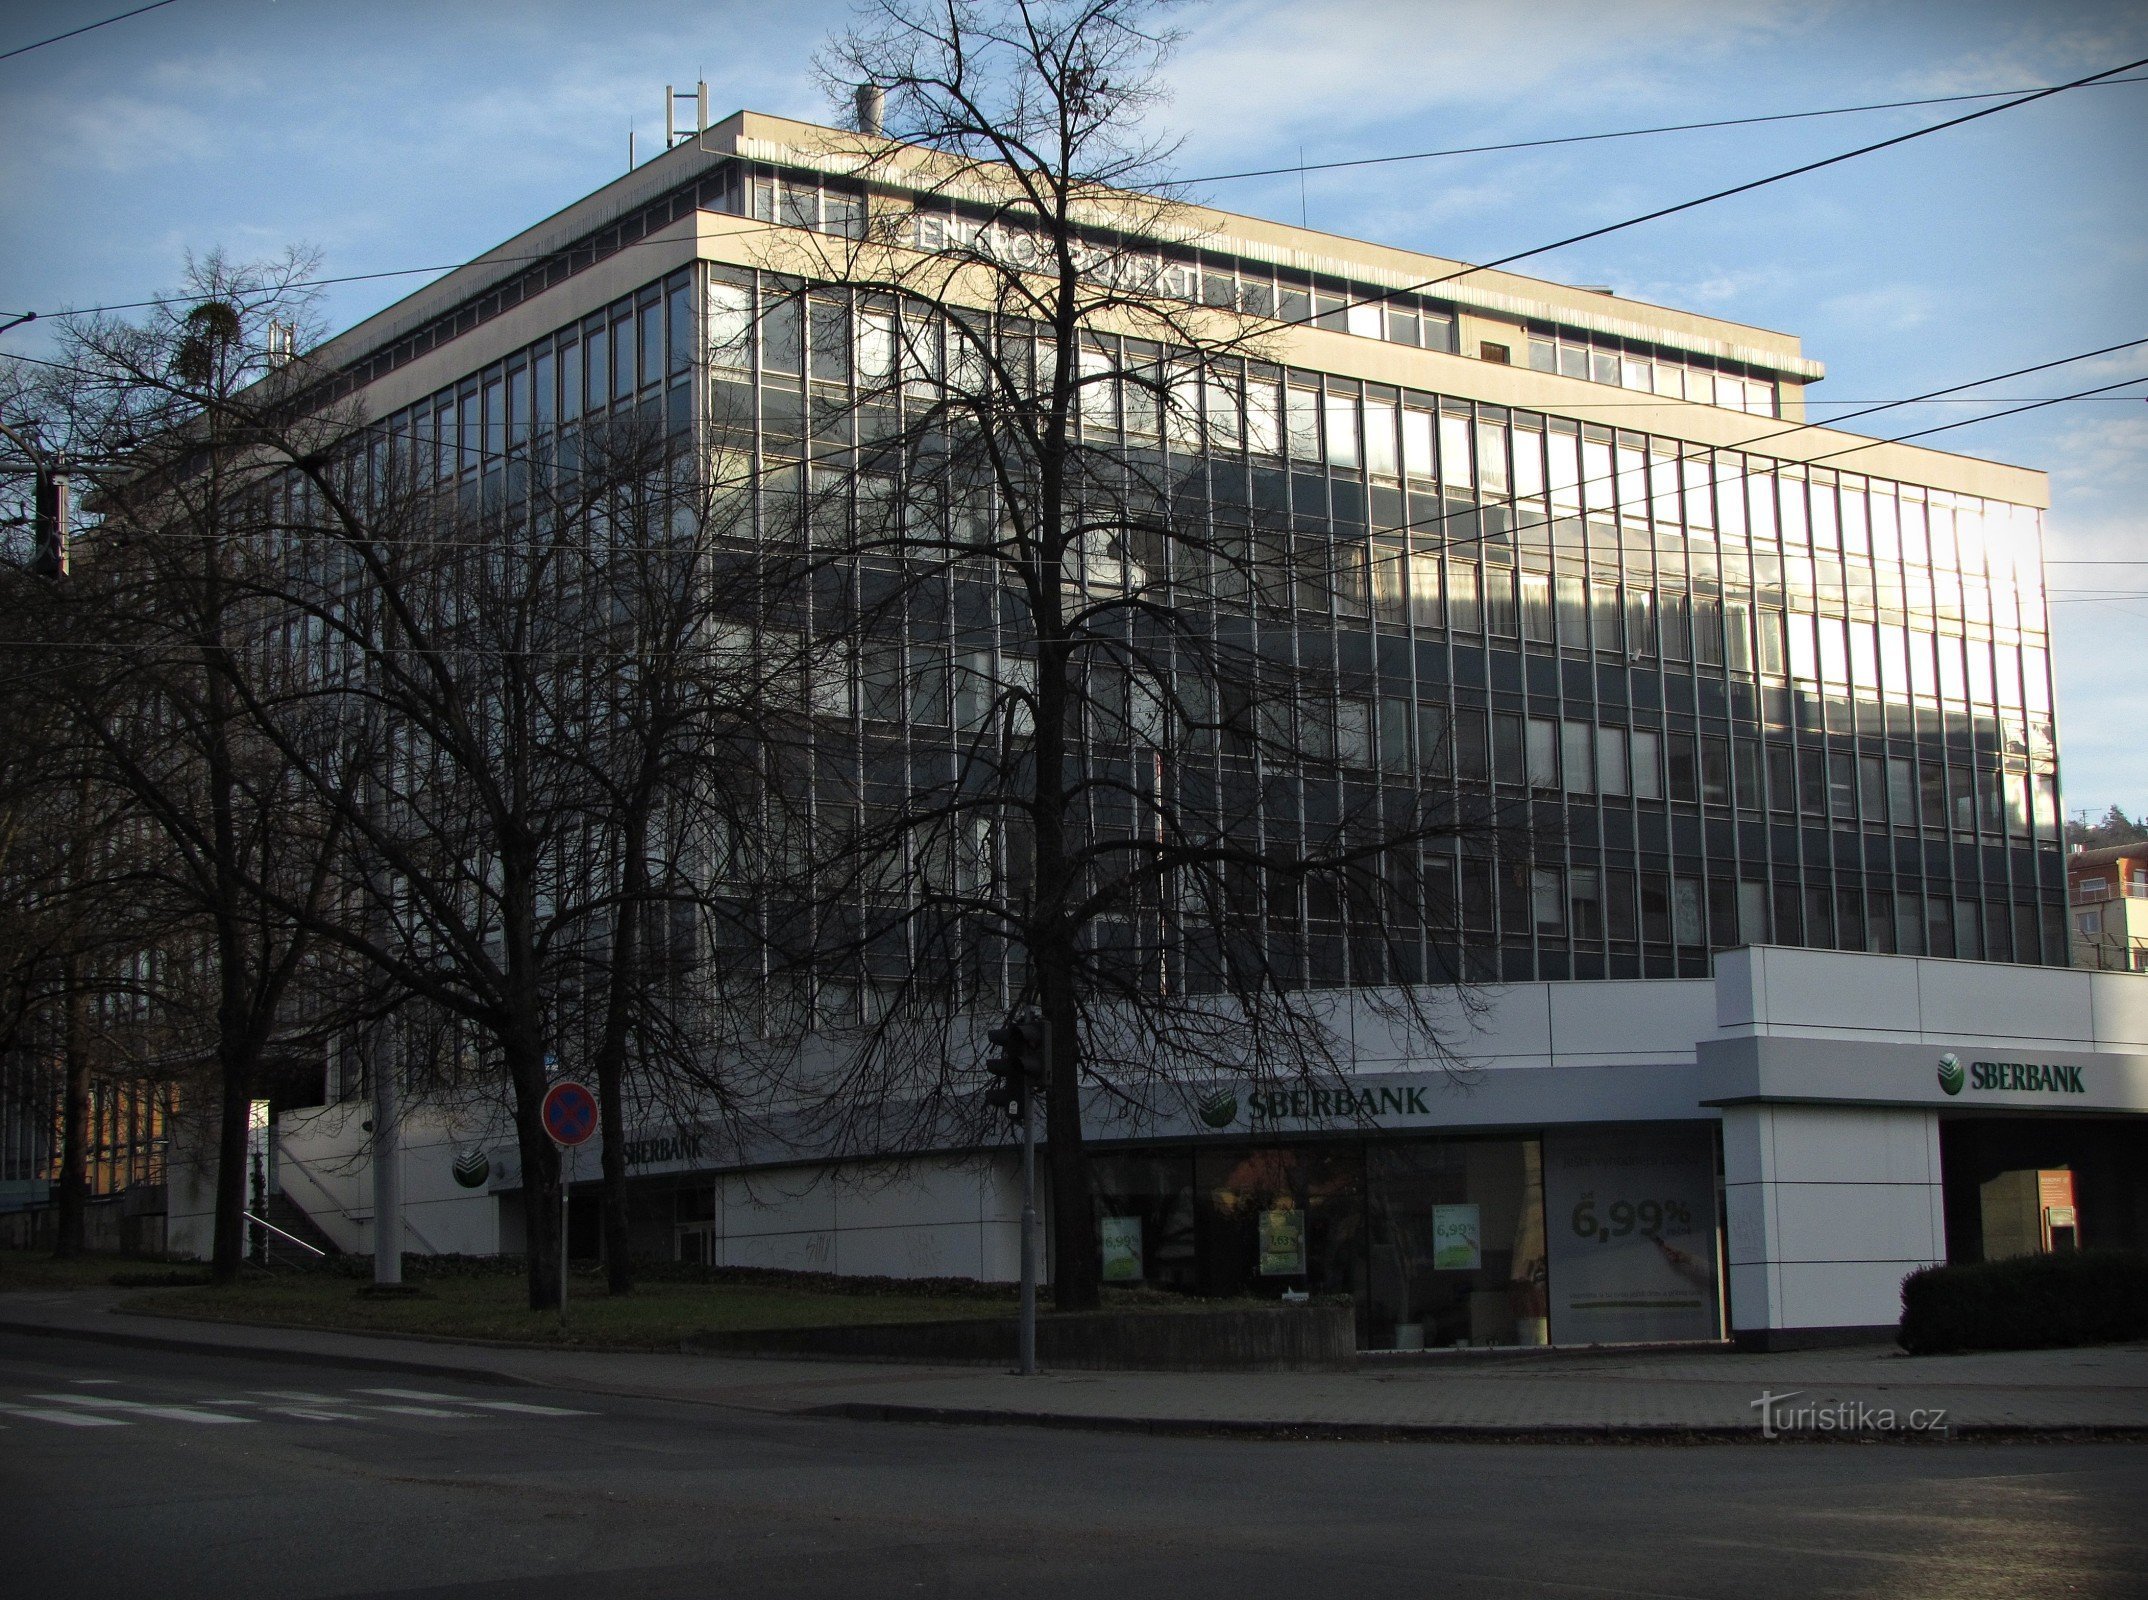 Zlín - Centroprojekt building